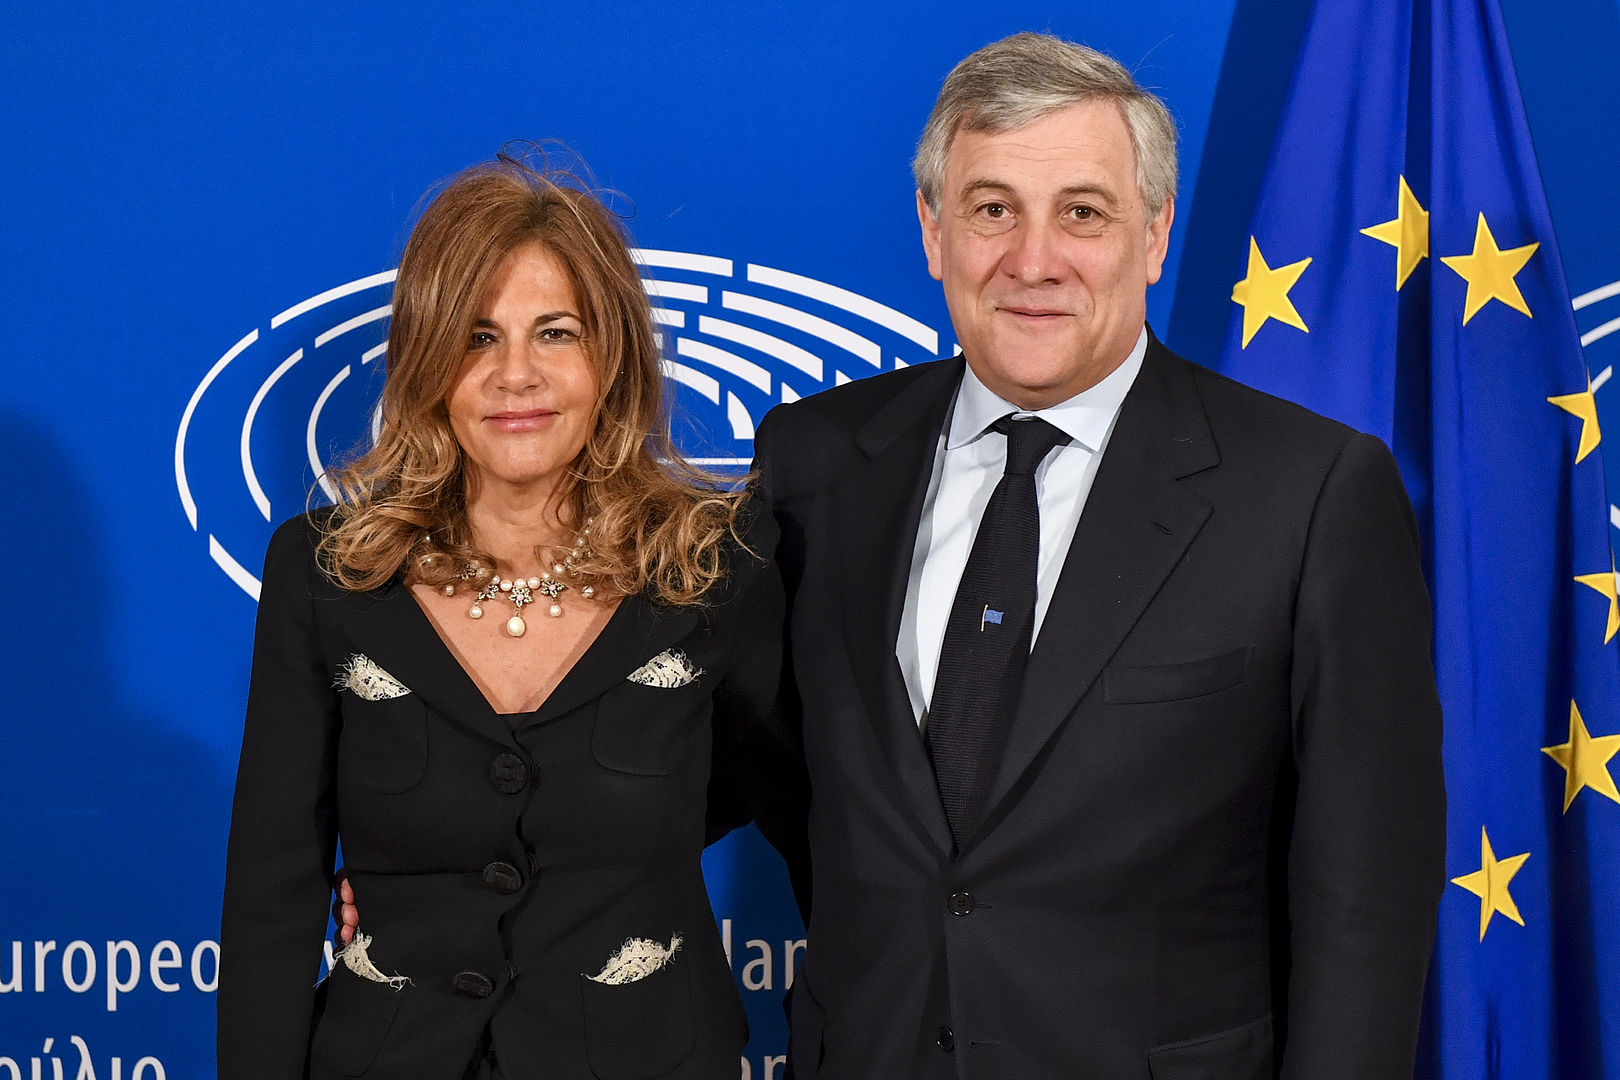 Emma Marcegaglia e Antonio Tajani - photo credit European Parliament